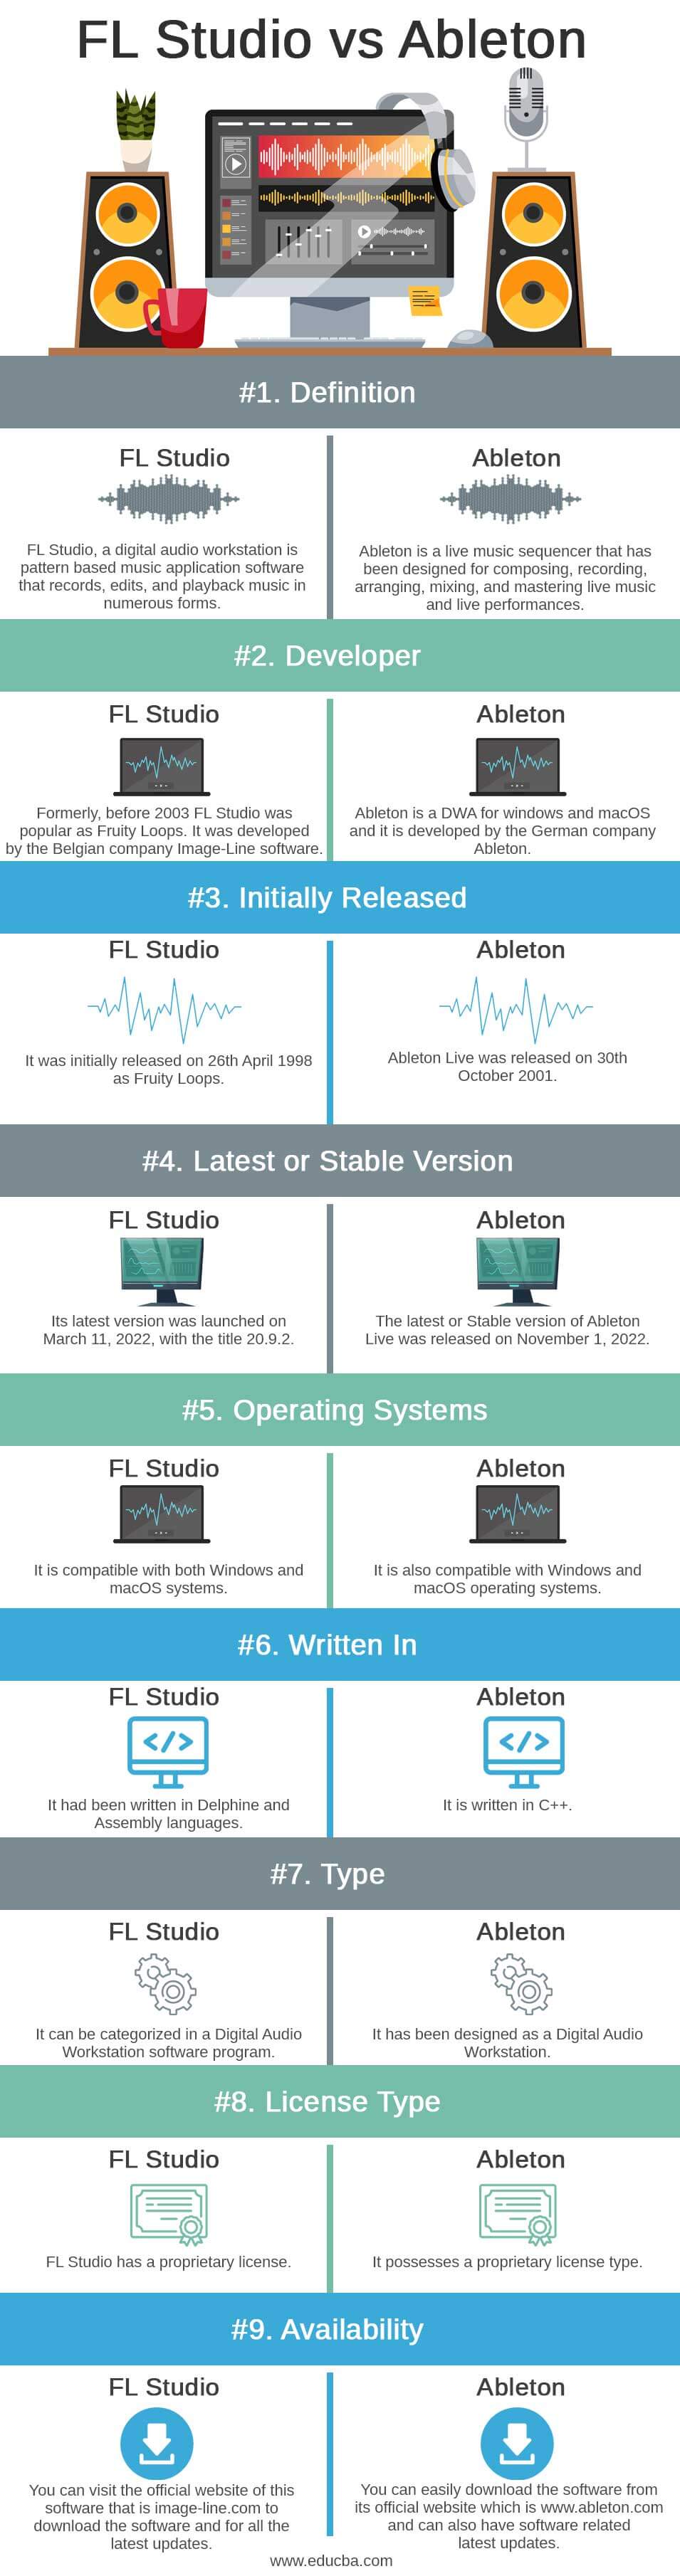 FL-Studio-vs-Ableton-info